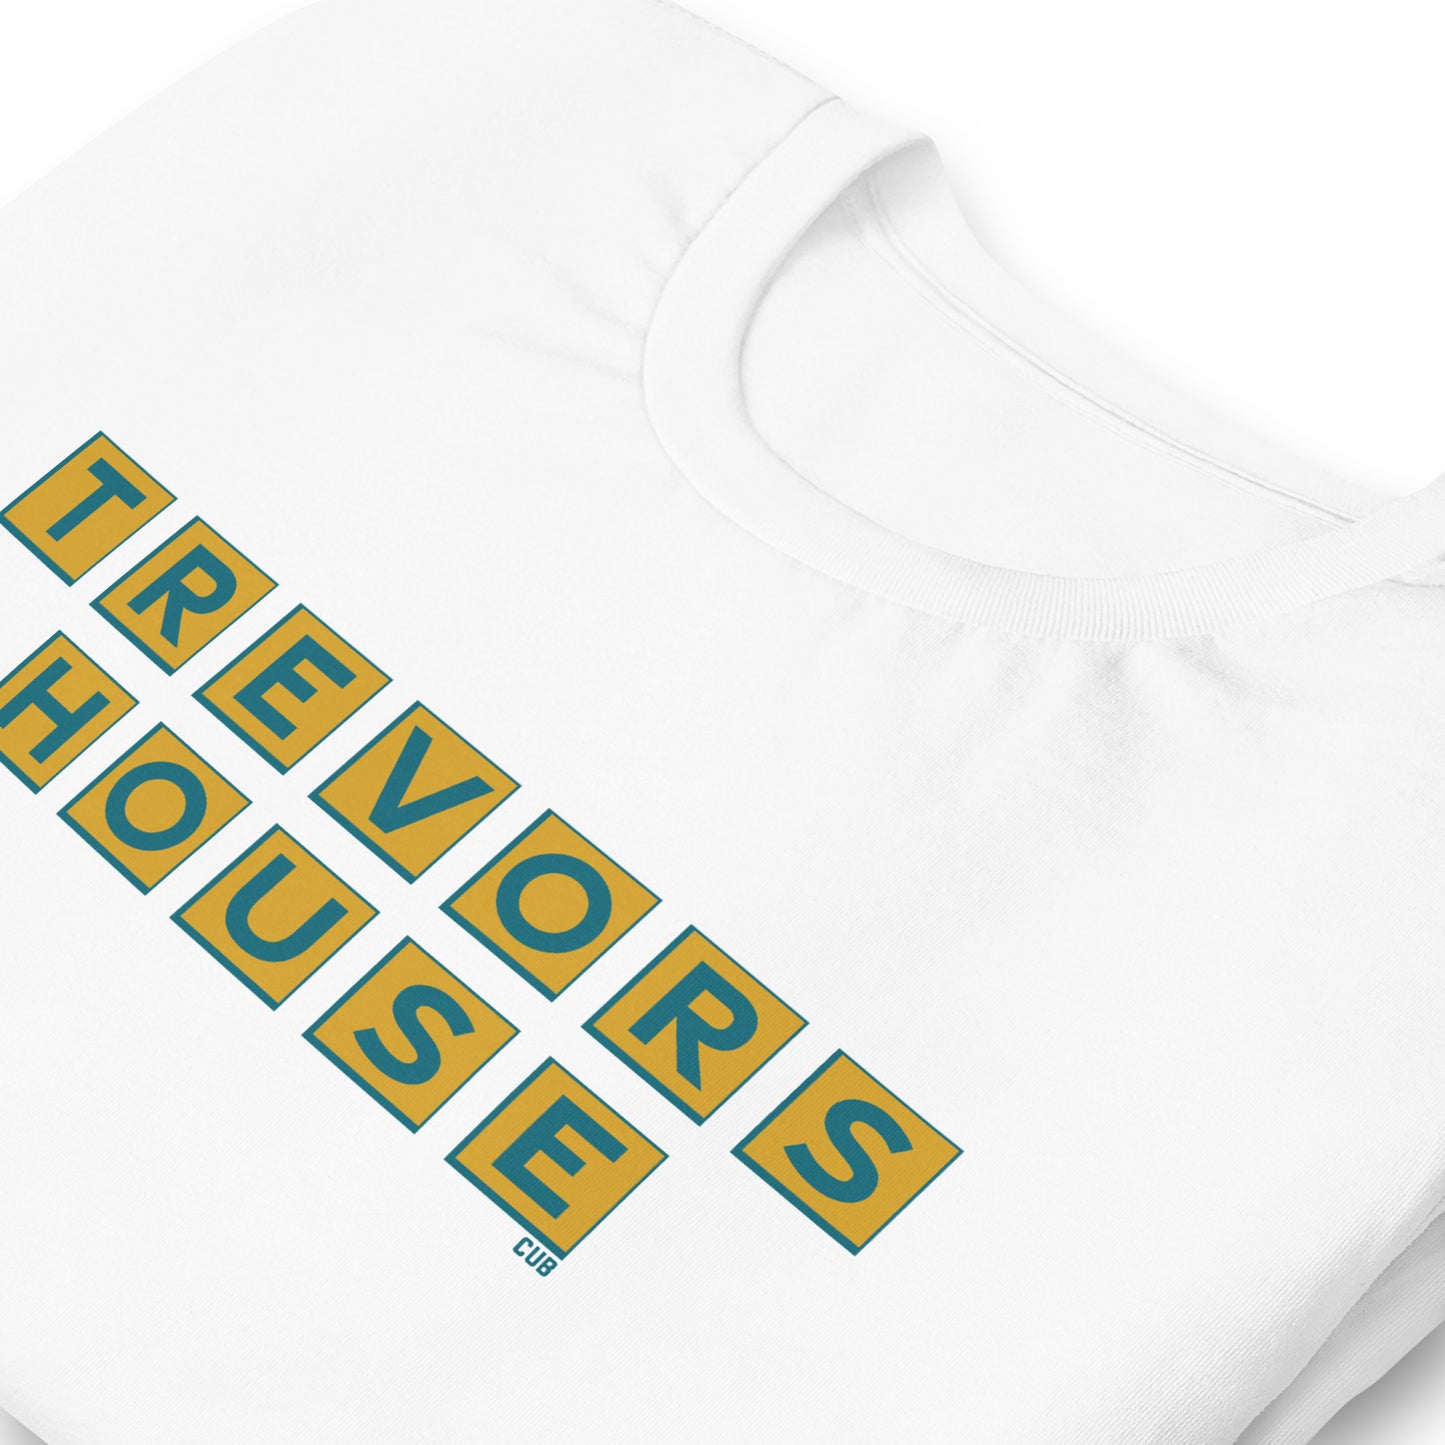 Trevor's House T-Shirt